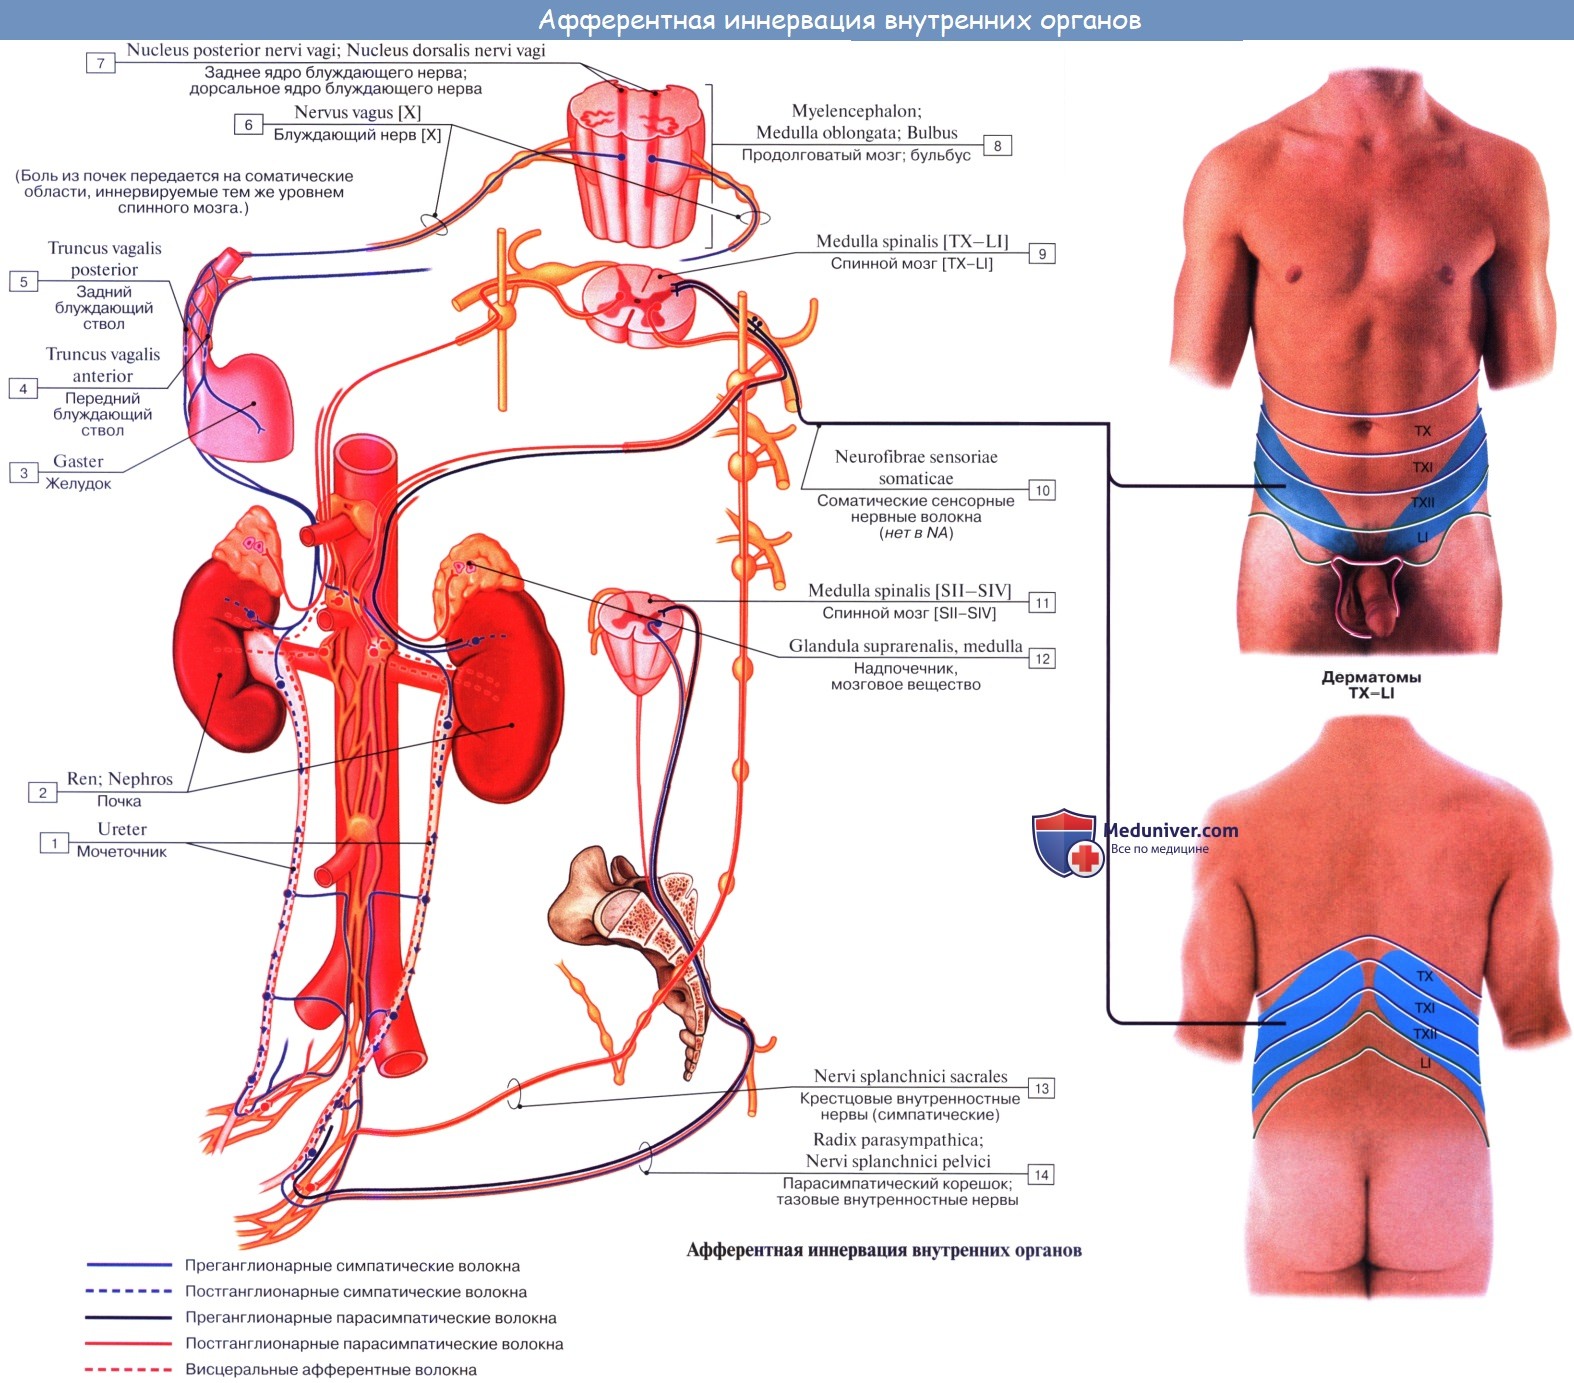 Анатомия: Единство вегетативной и центральной нервной системы. Зоны Захарьина — Геда